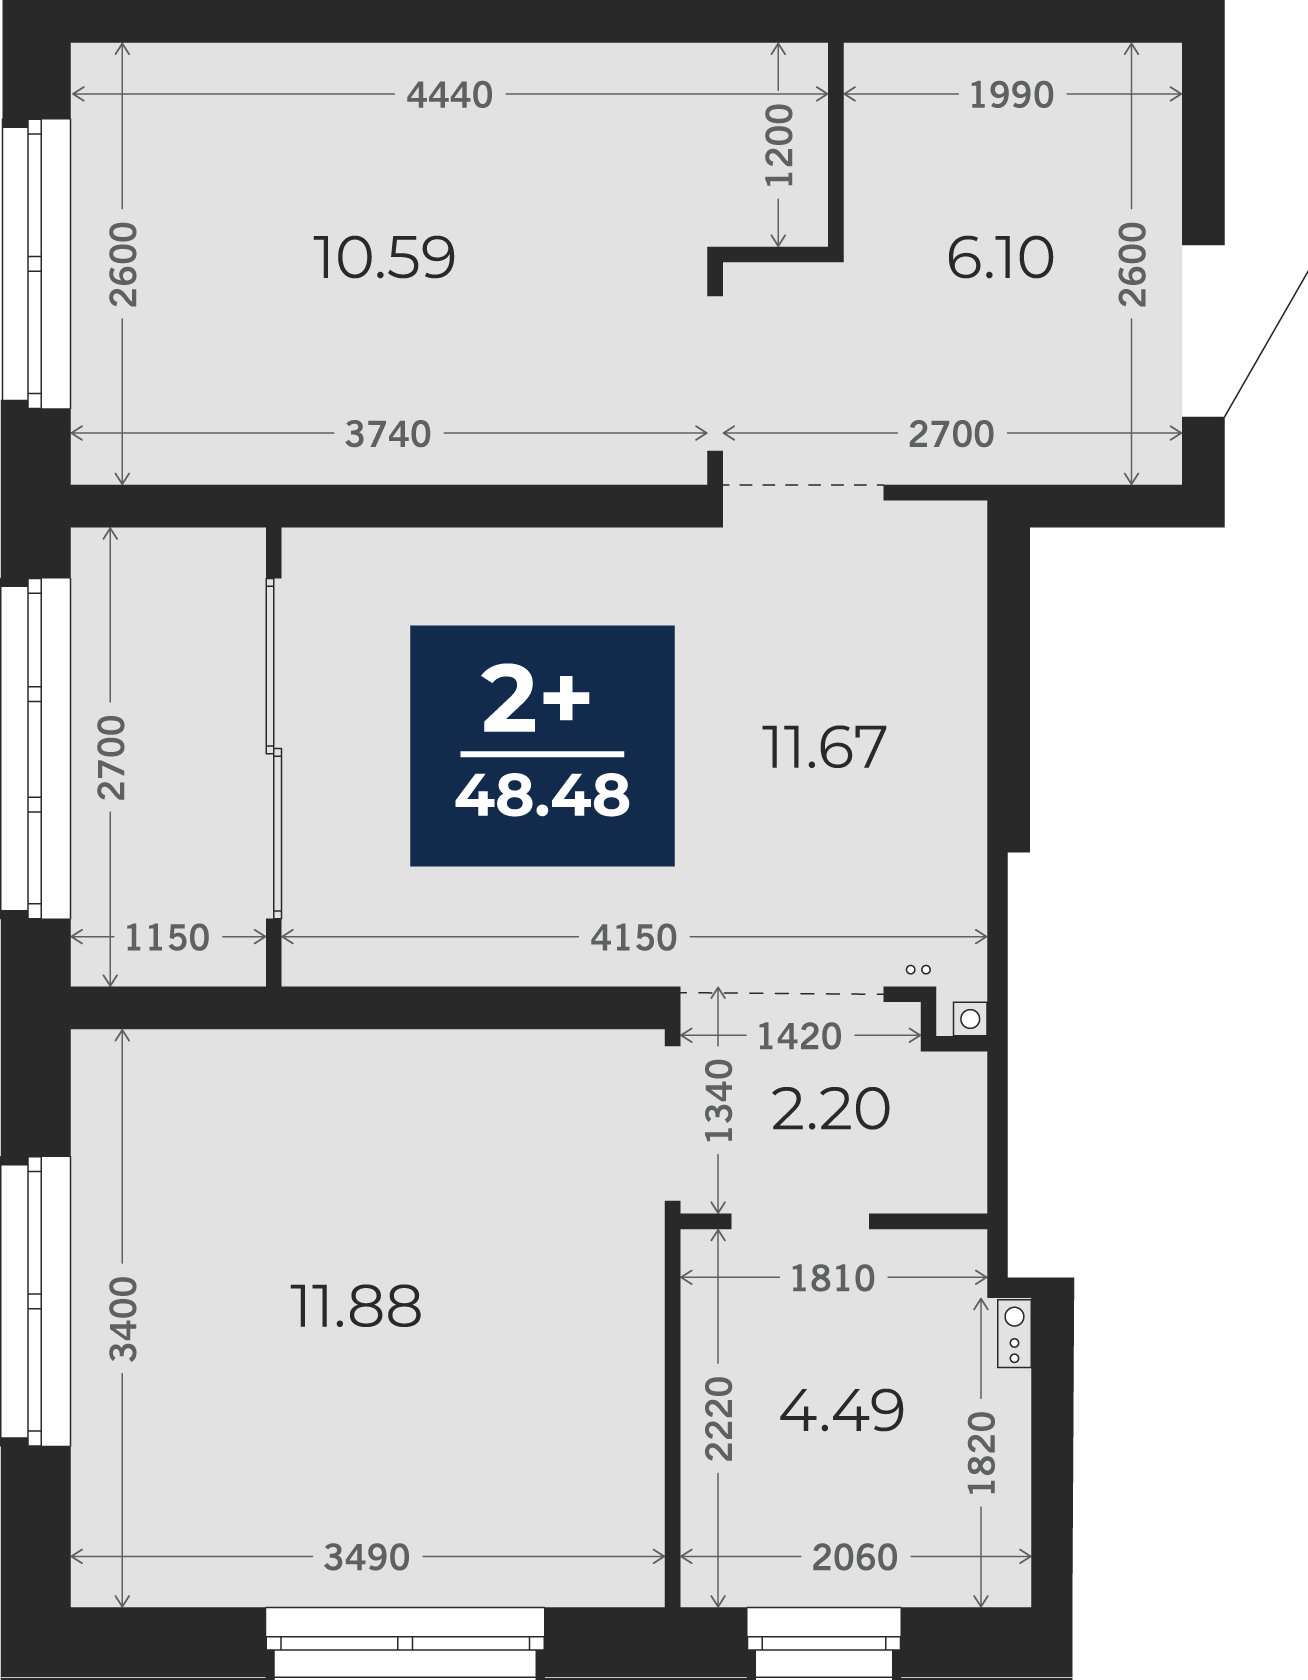 Квартира № 137, 2-комнатная, 48.48 кв. м, 16 этаж